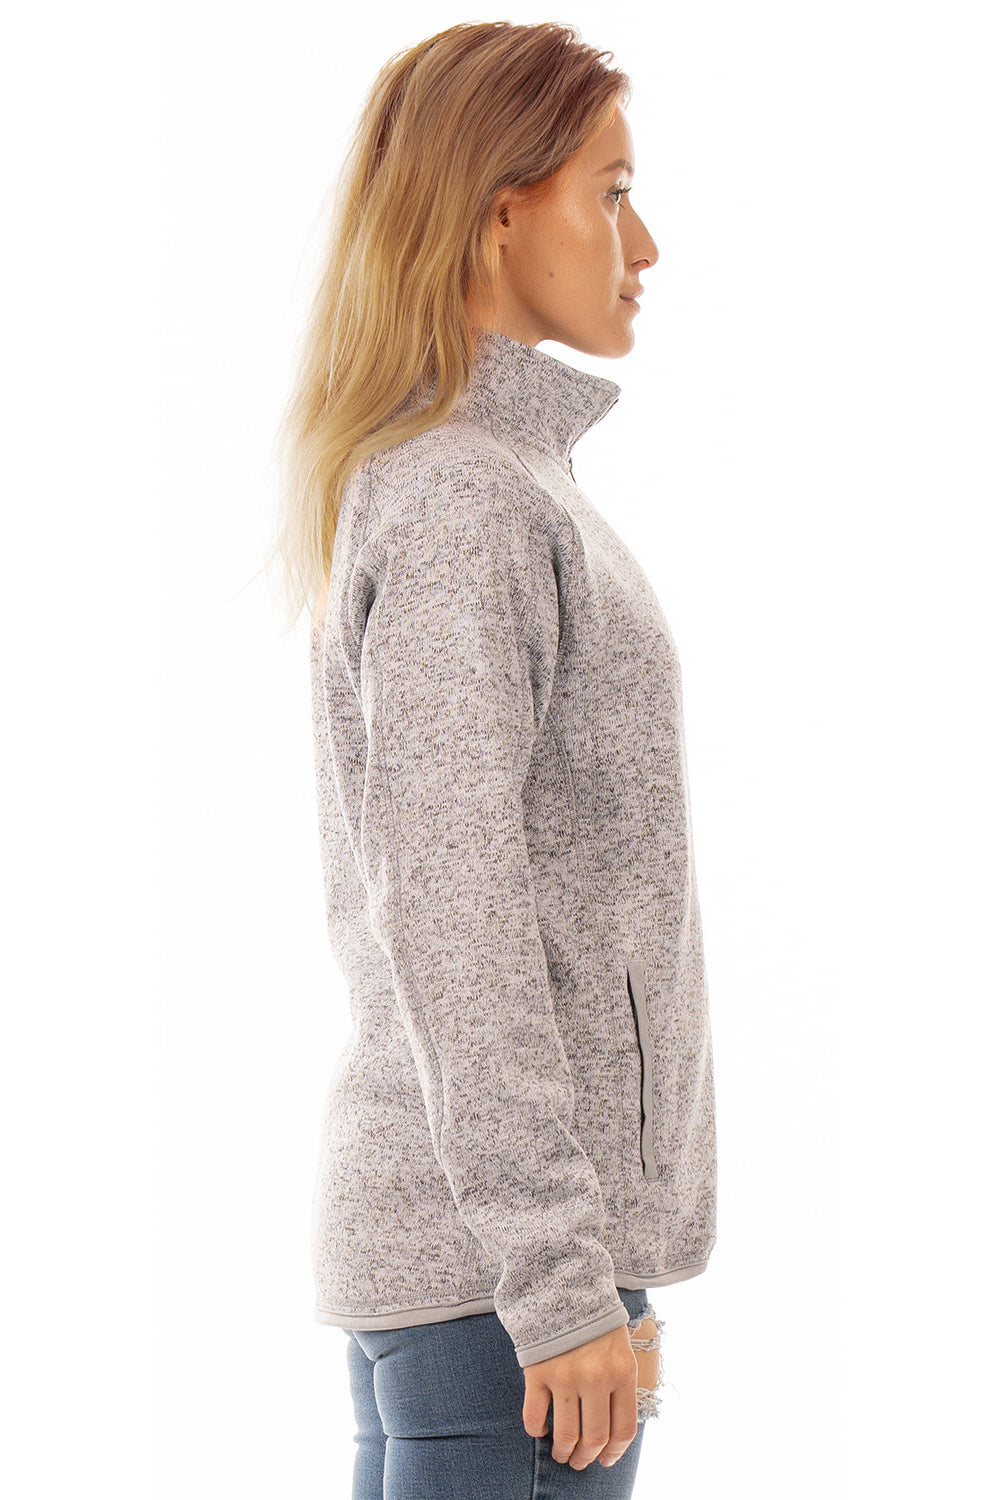 Burnside 5901 Womens Sweater Knit Full Zip Jacket Heather Grey Model Side